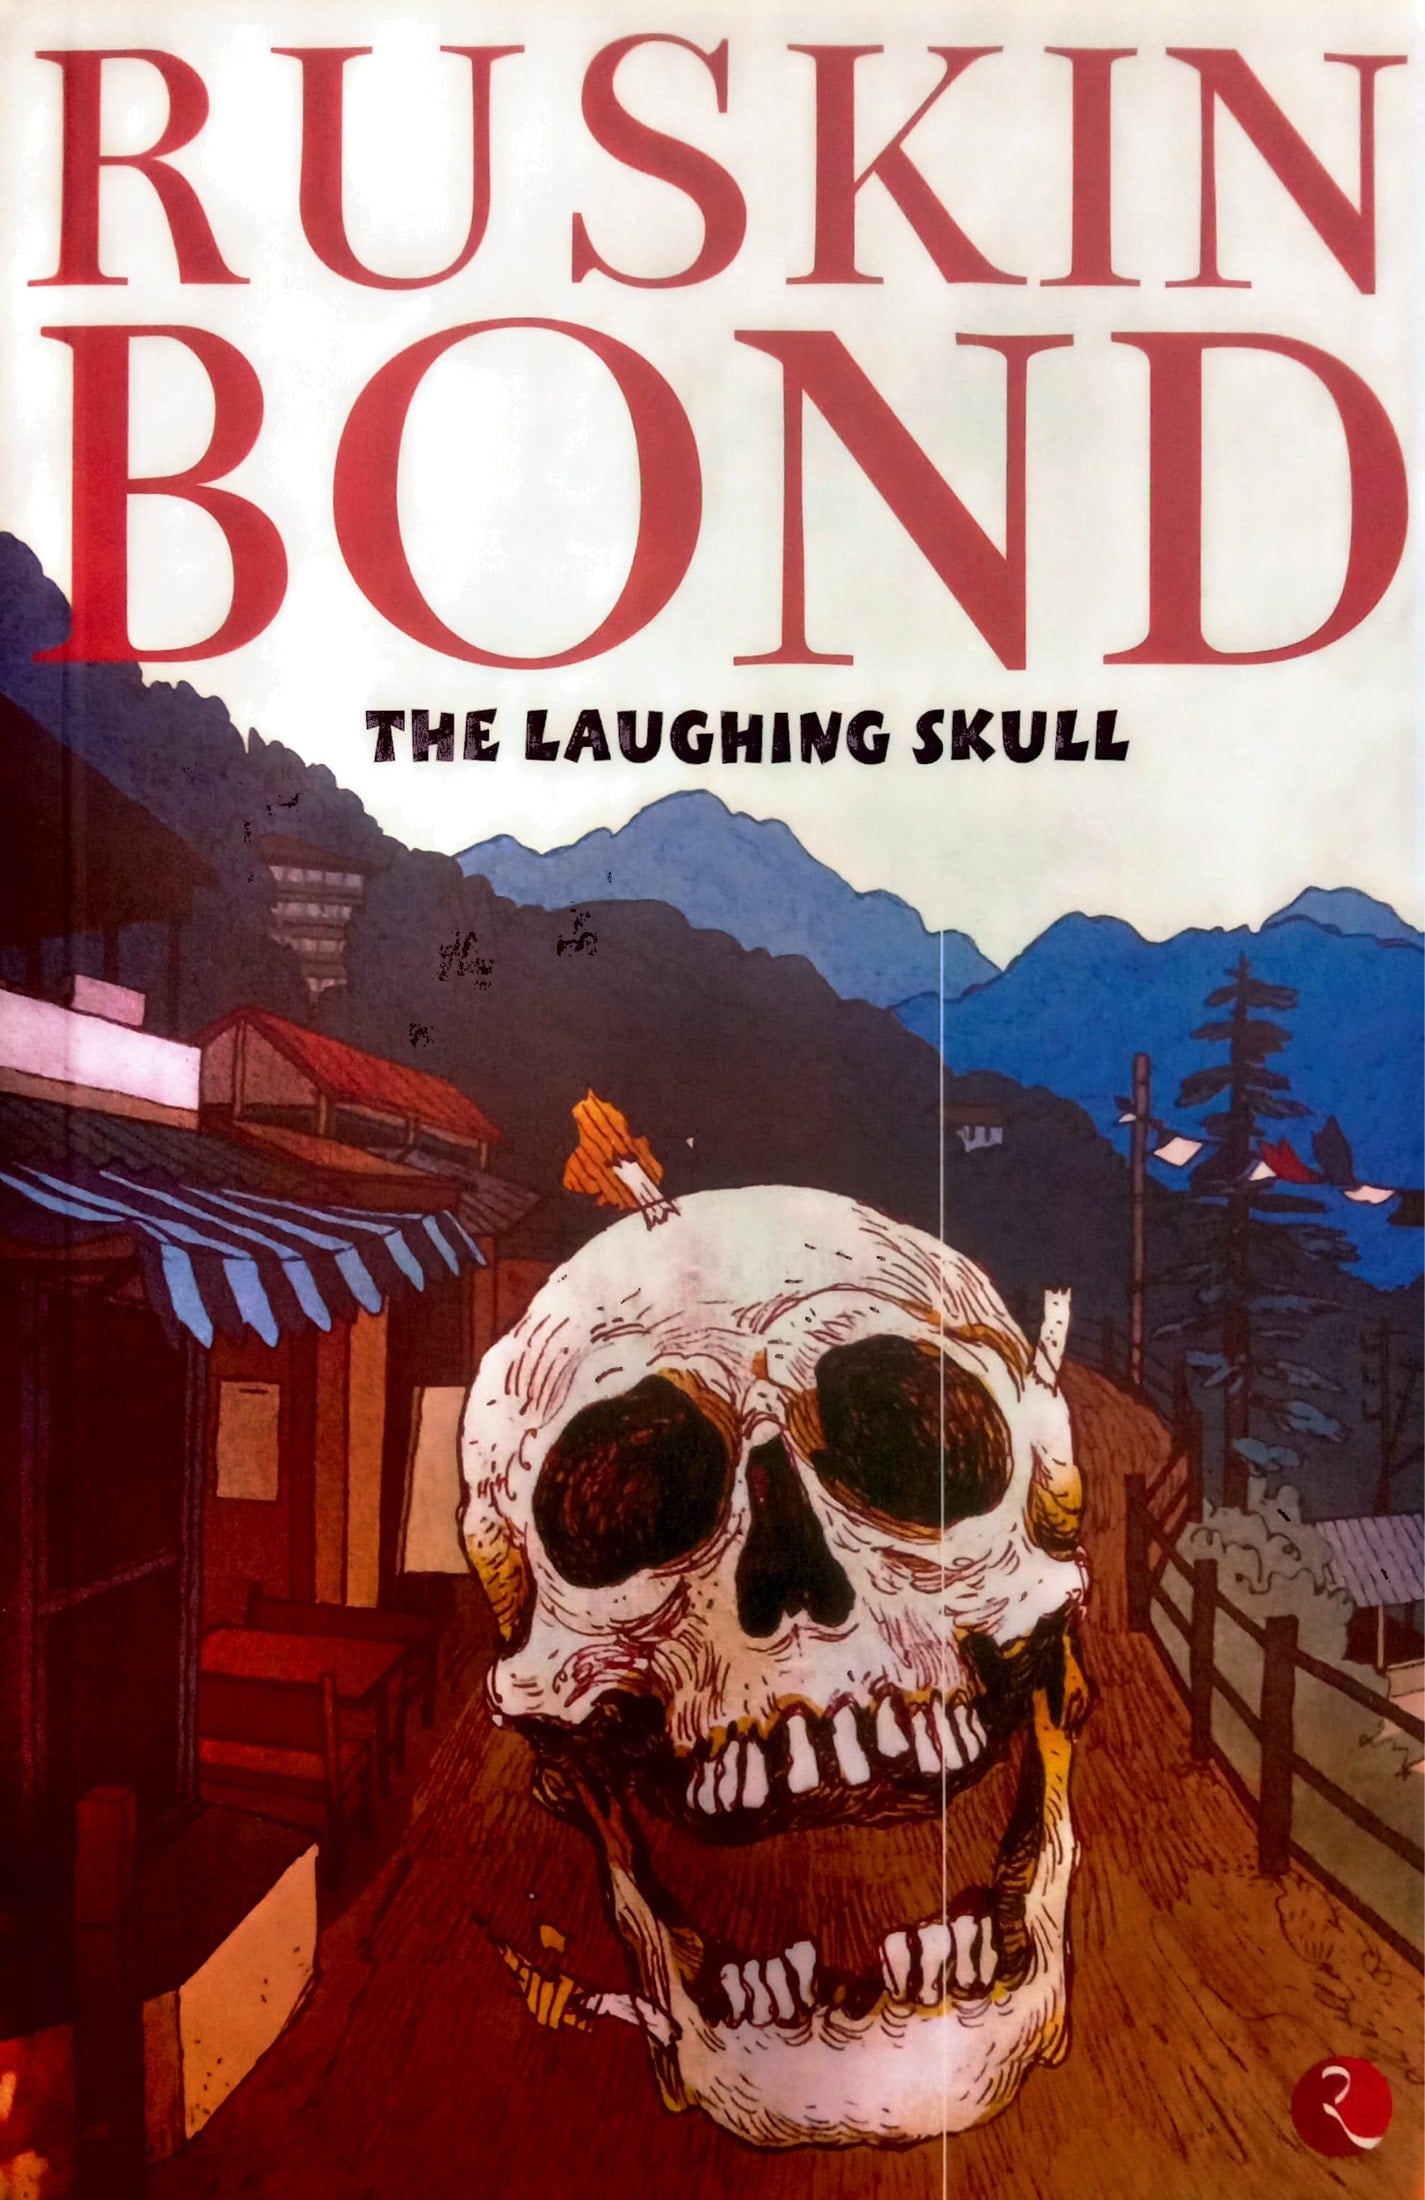 RUSKIN BOND - THE LAUGHING SKULL